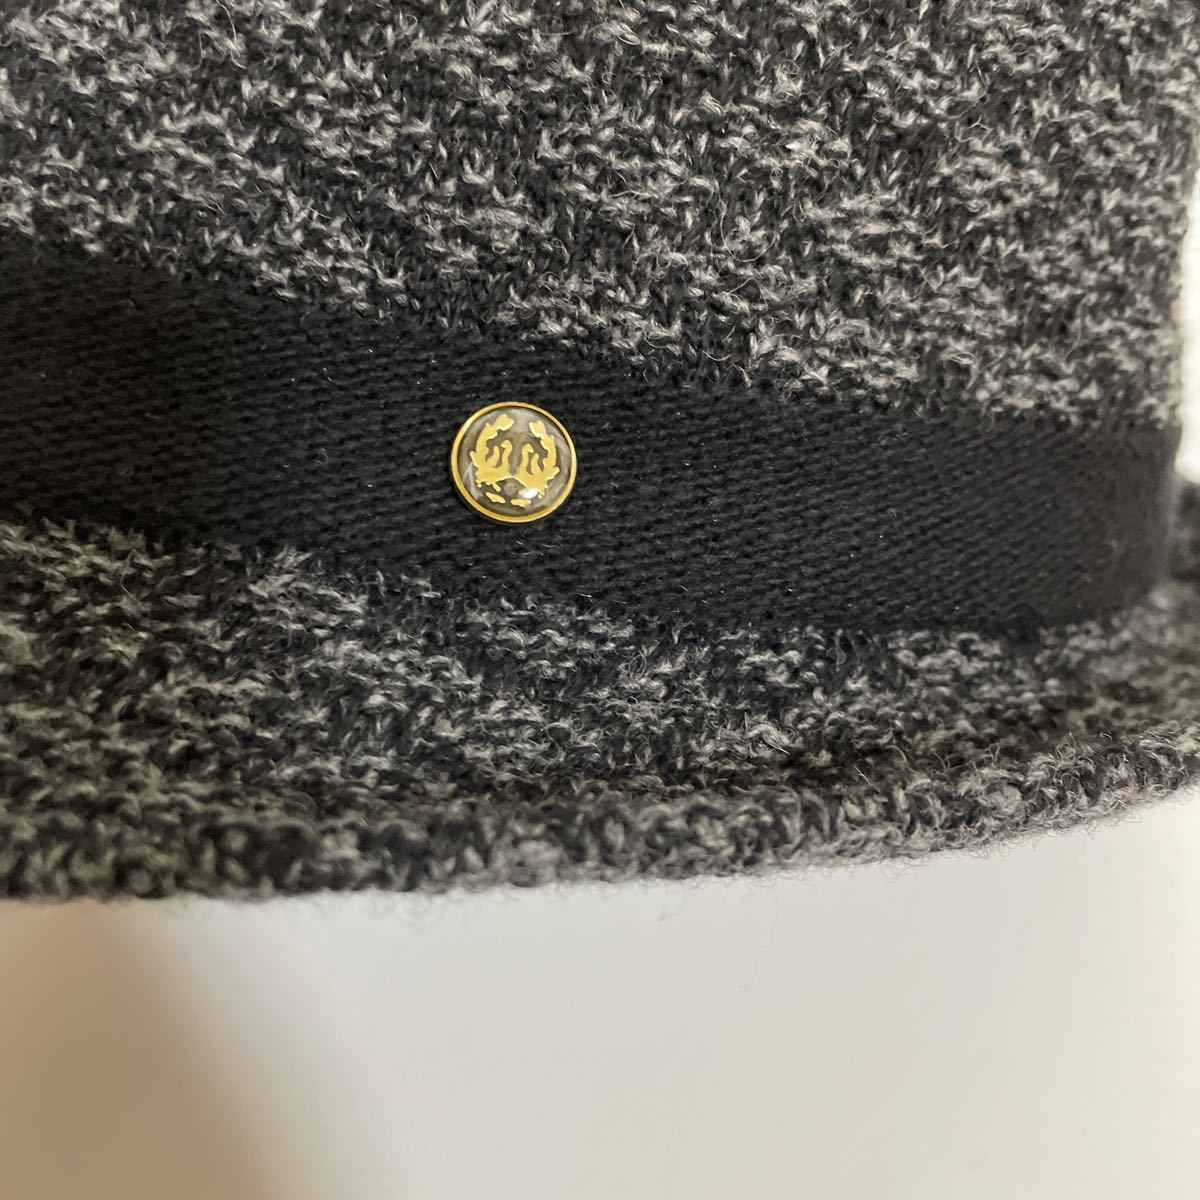 A 新品 TOKIO HATトーキョーハット 帽子 ウール混 中折れハット Mサイズ56.5cm サイズ調節可能